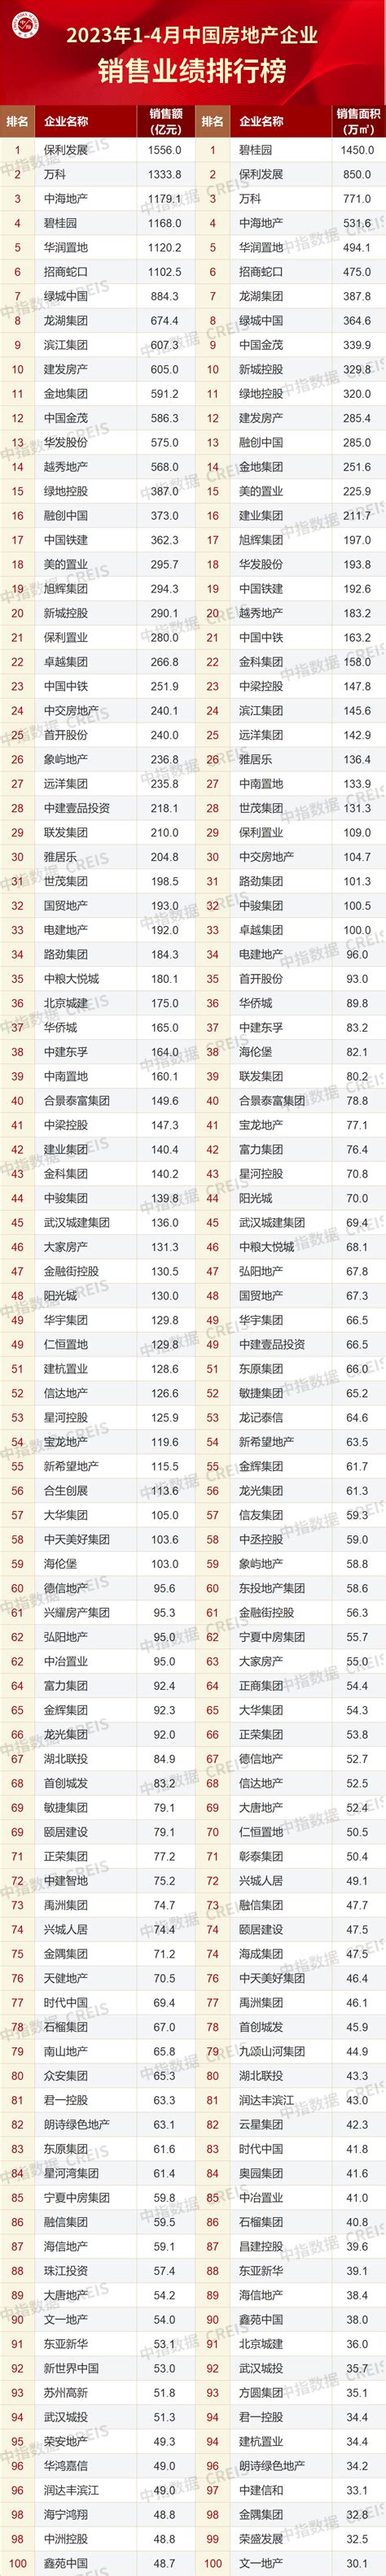 2014年中国房地产企业销售排行榜_新浪乐居_新浪网